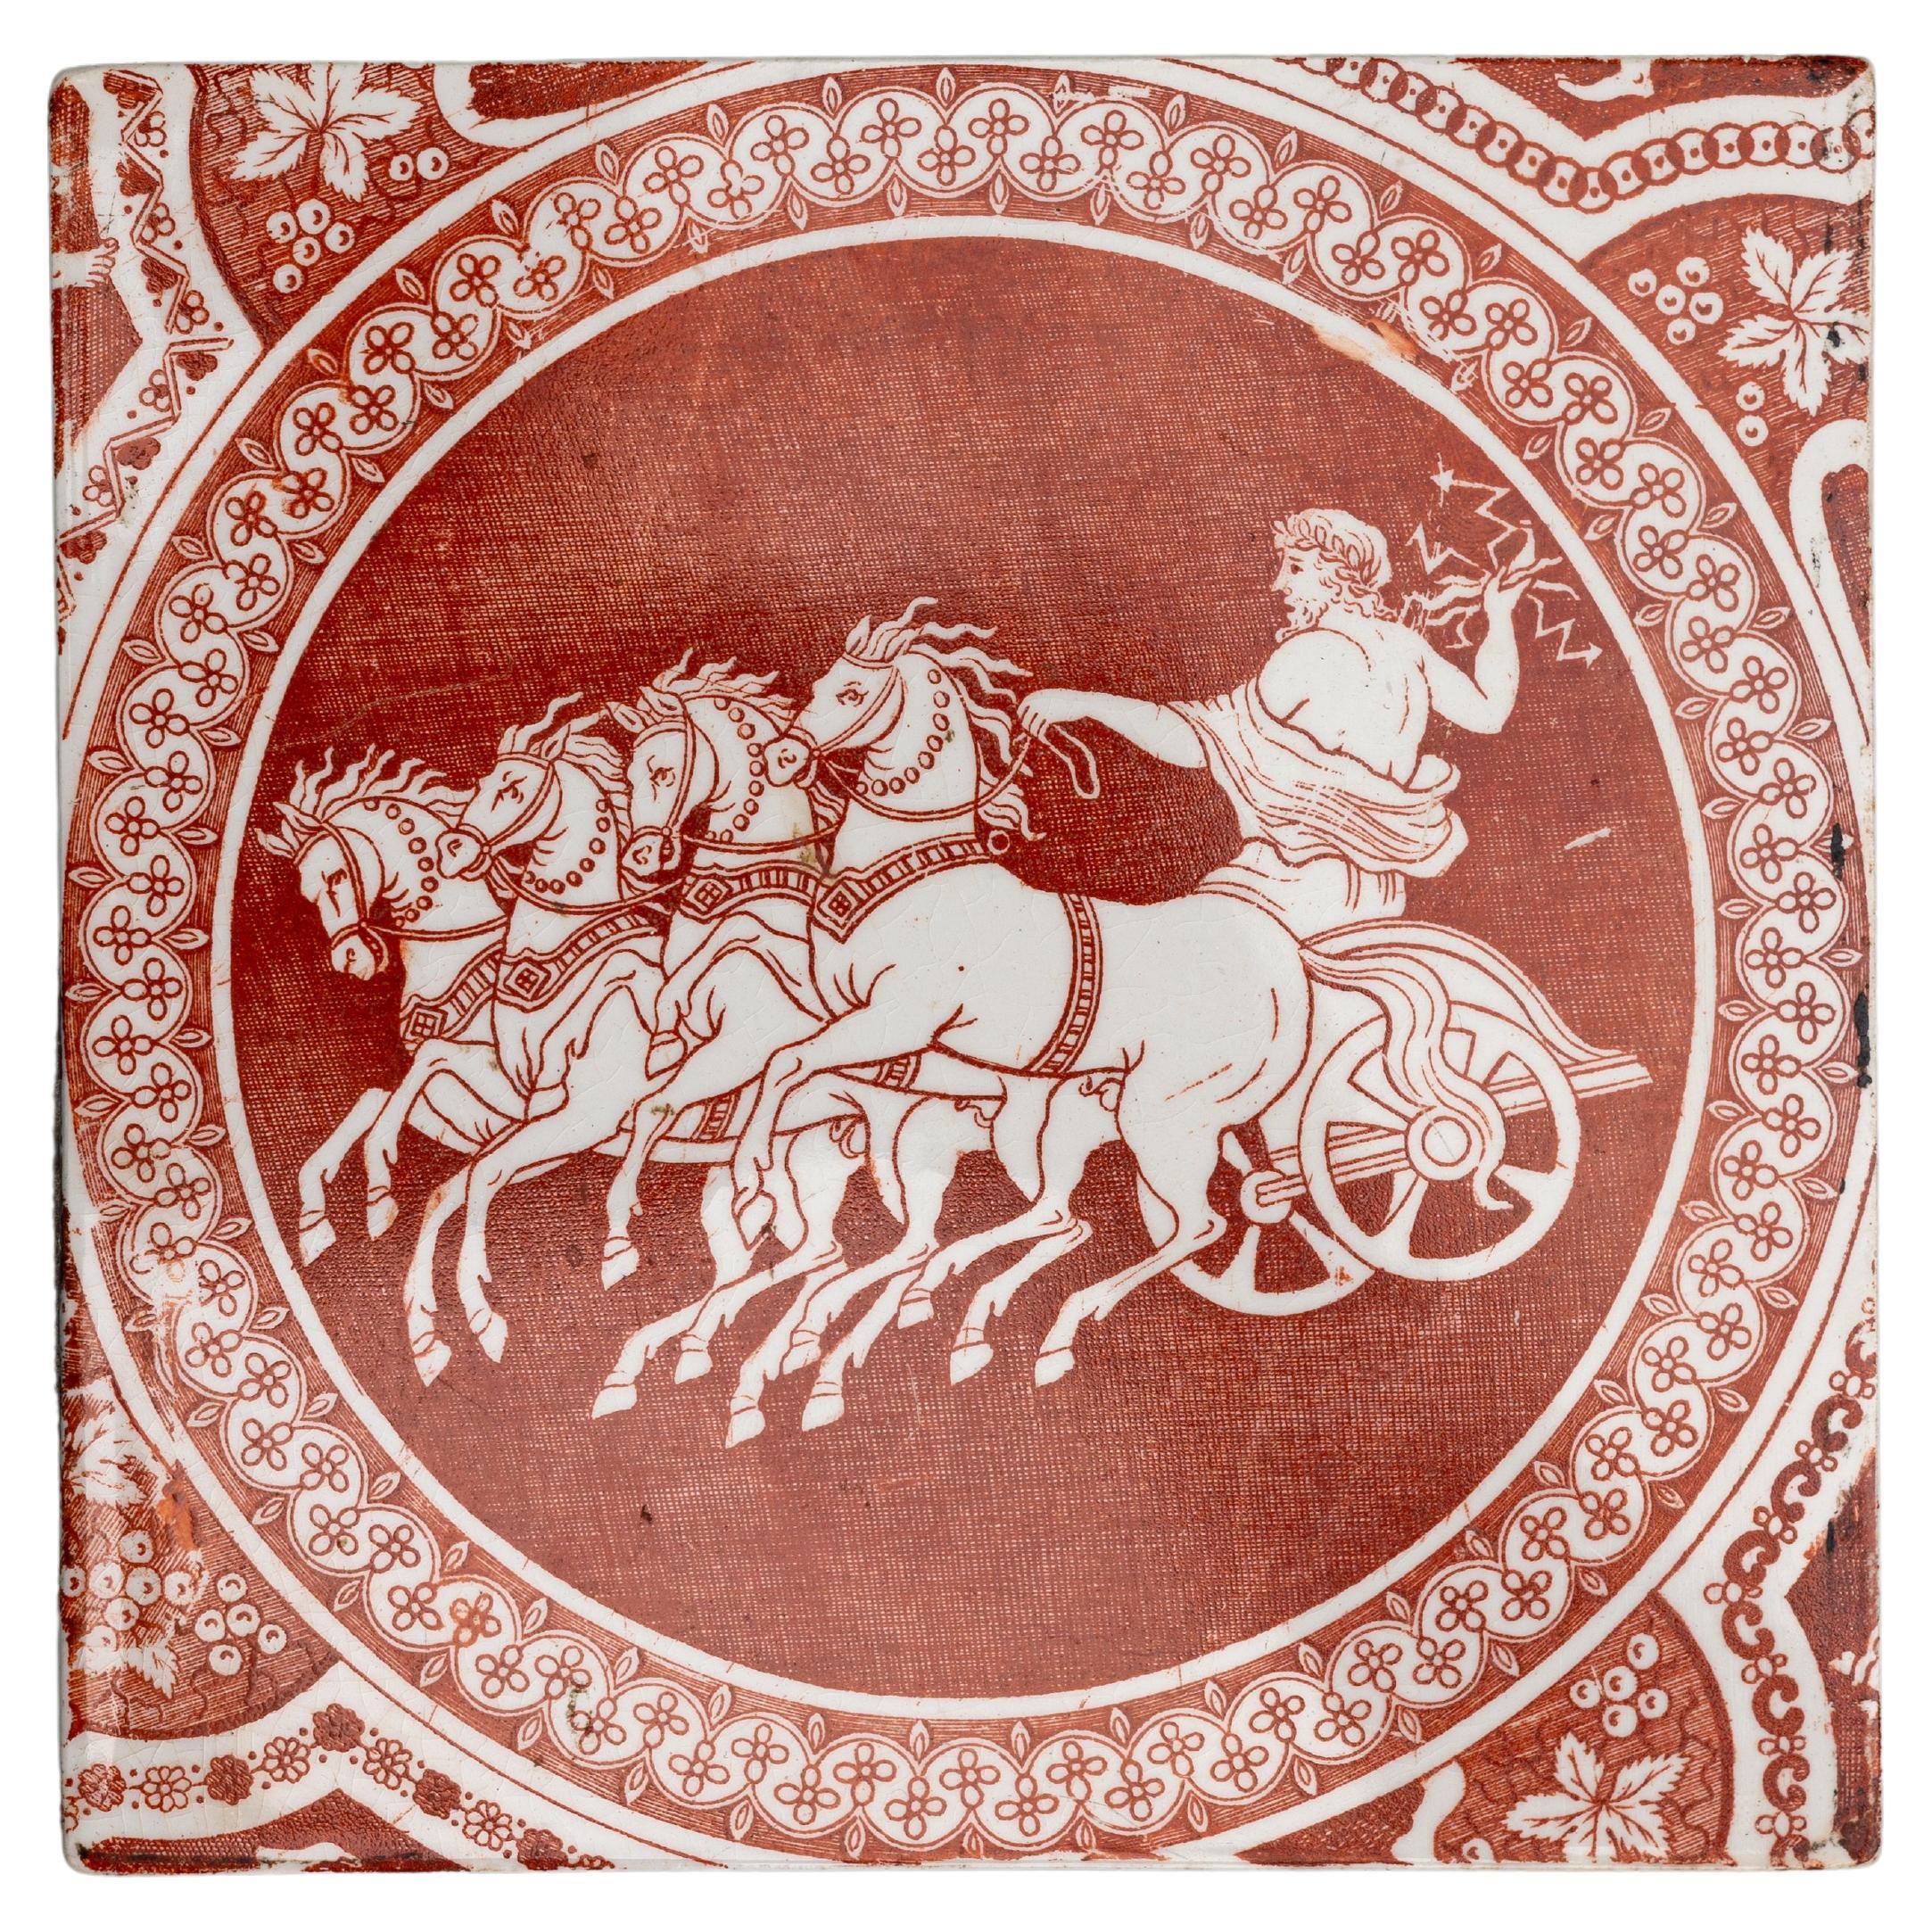 Carreau à motif grec rouge de Spode du début du 19e siècle